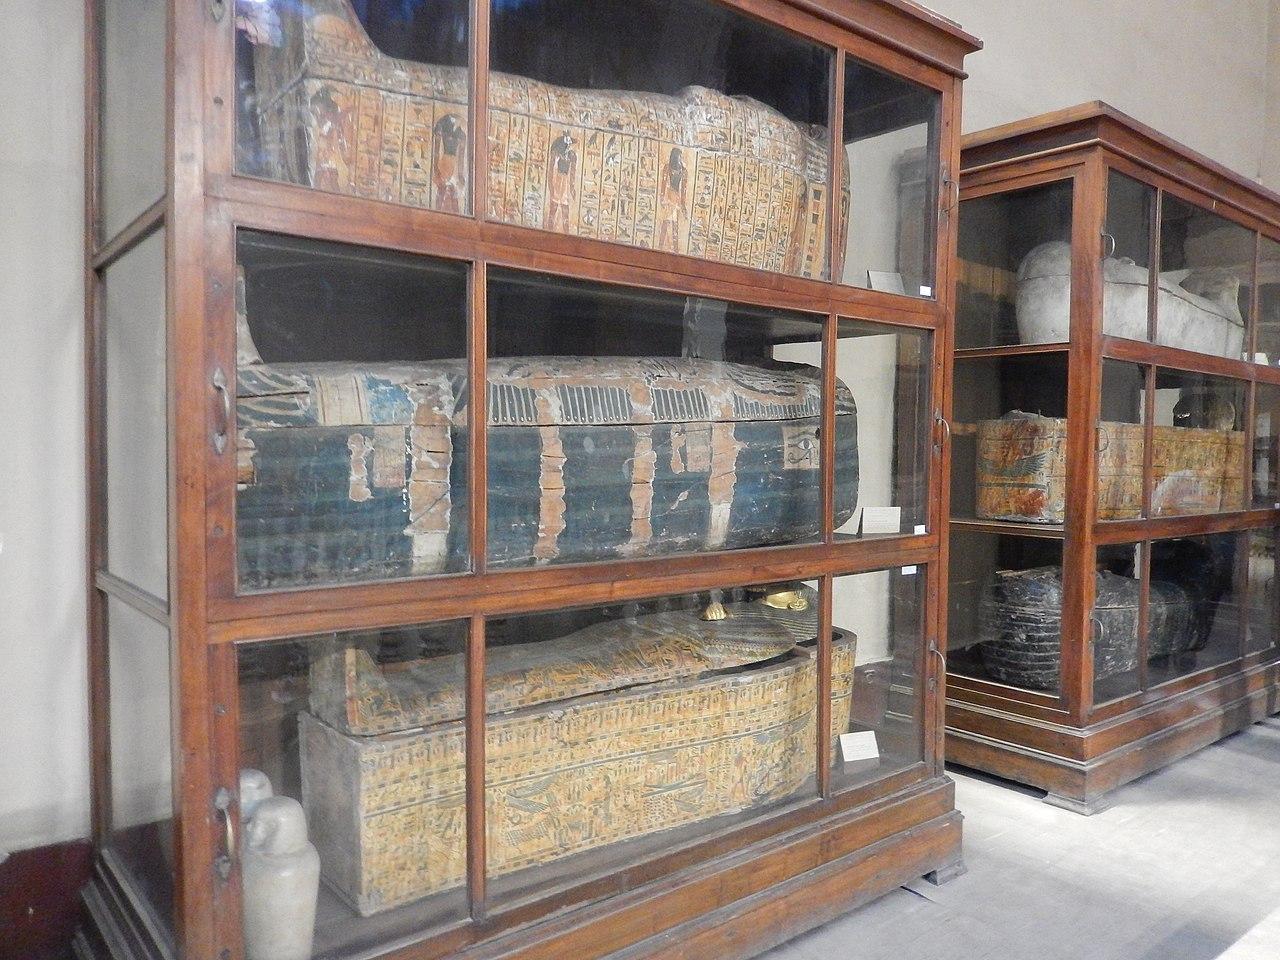 المومياوات الملكية في المتحف المصري